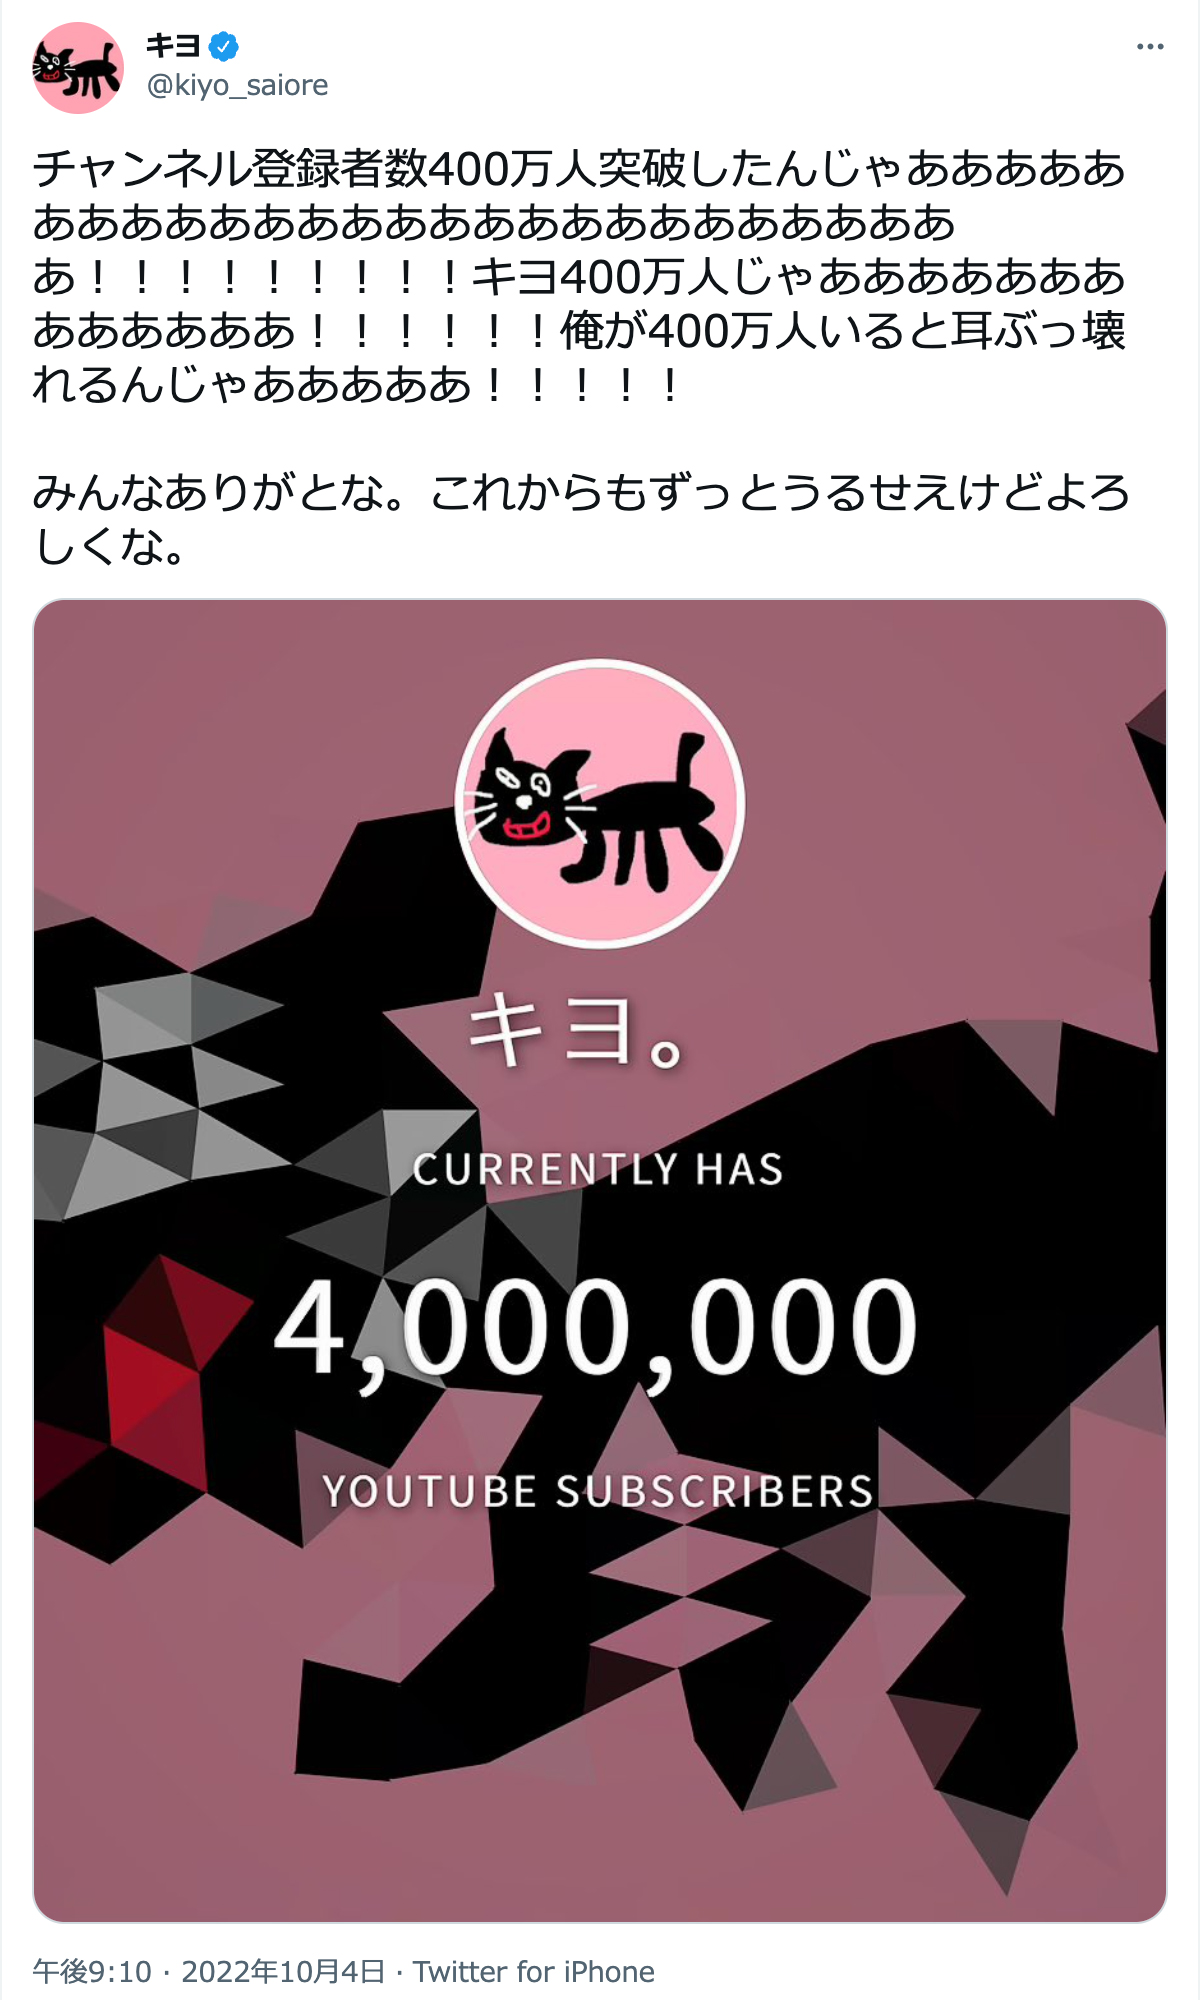 キヨがチャンネル登録者数400万人突破